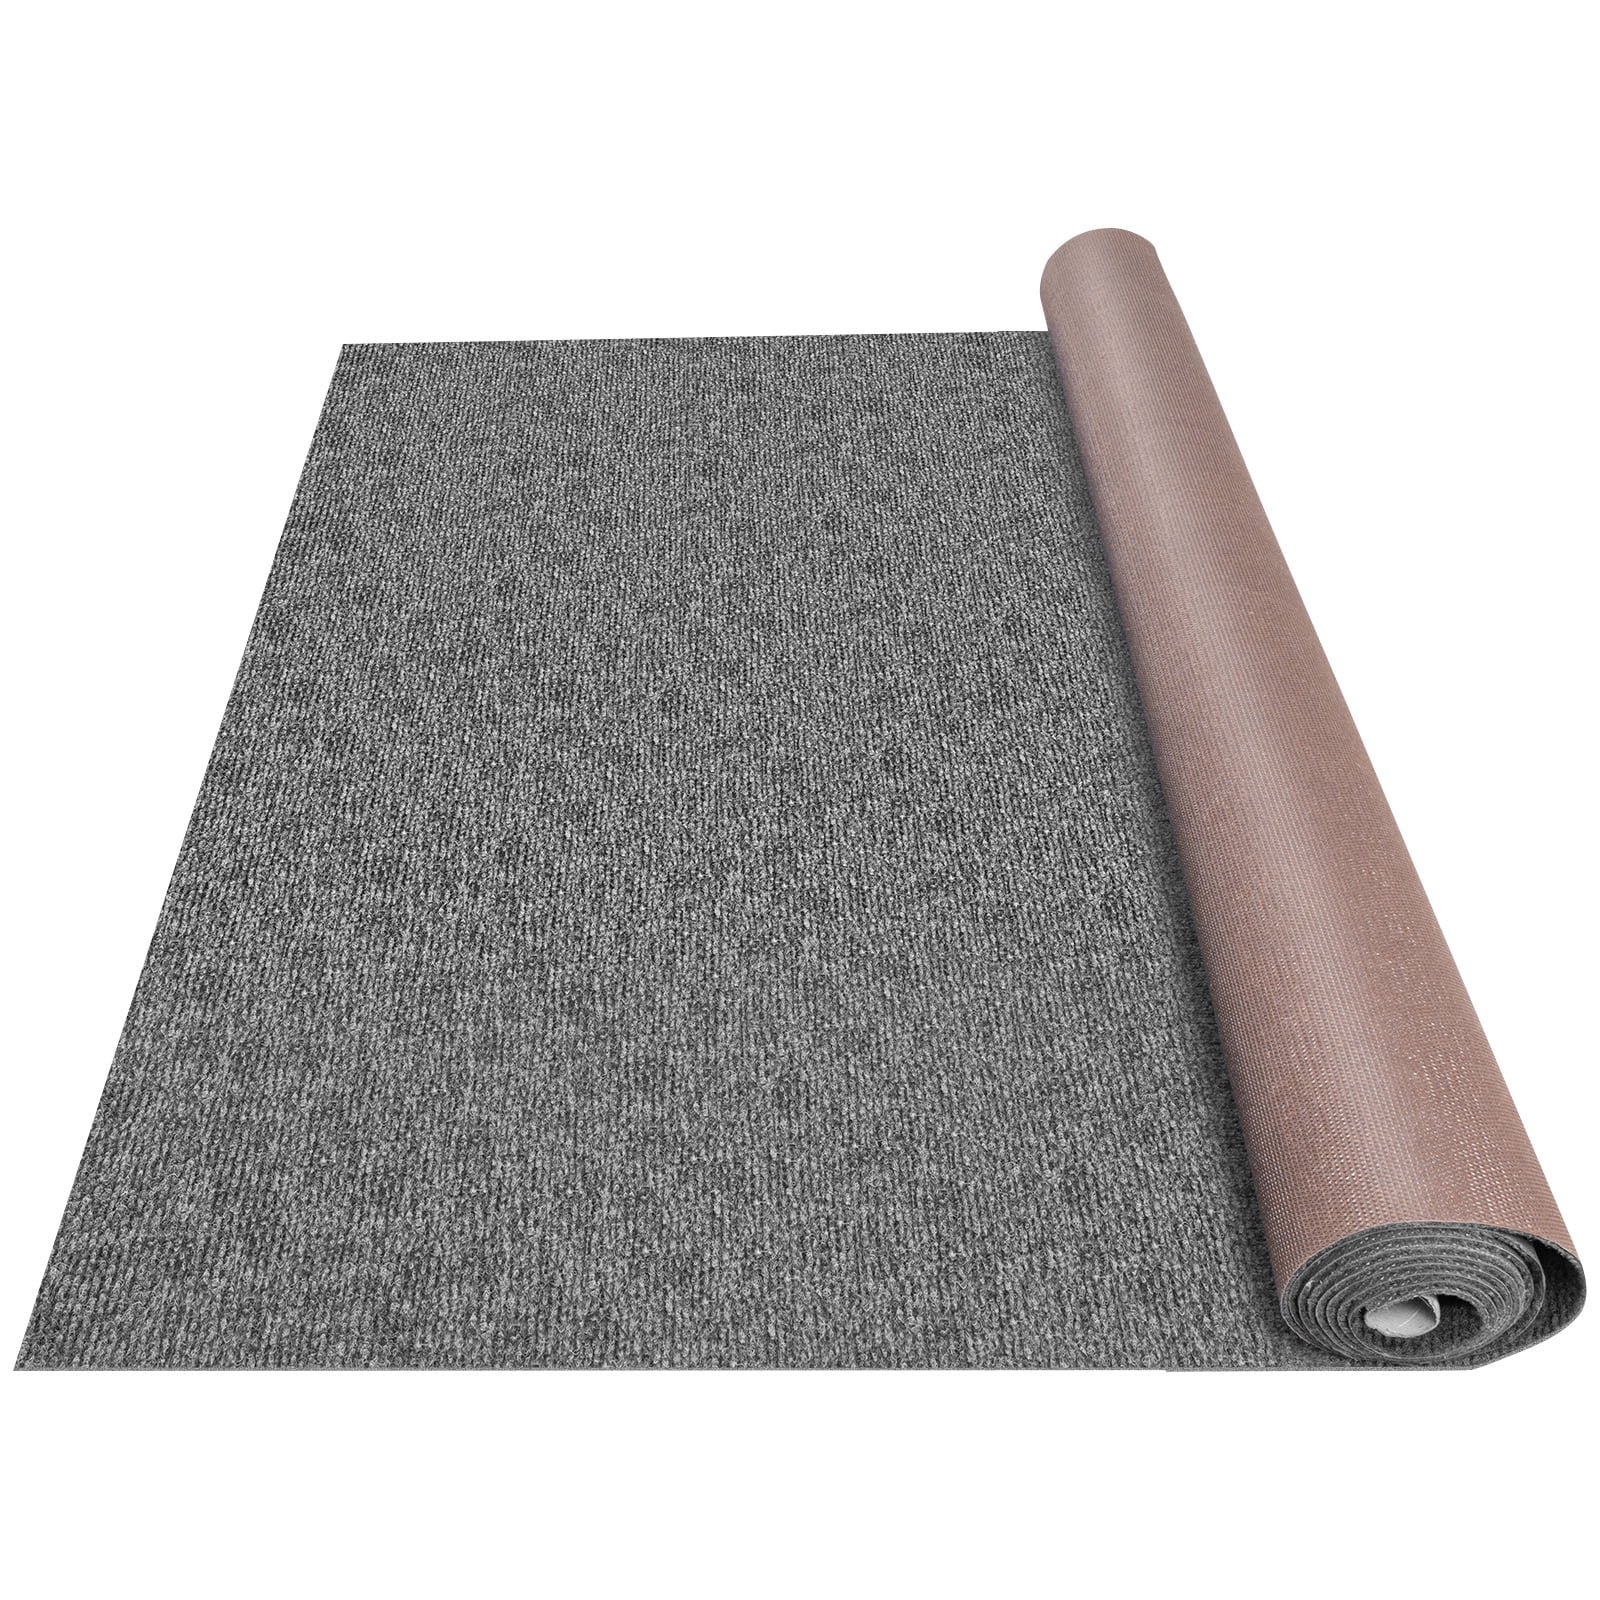 Instabind Carpet Binding - Desert (5ft Section) 